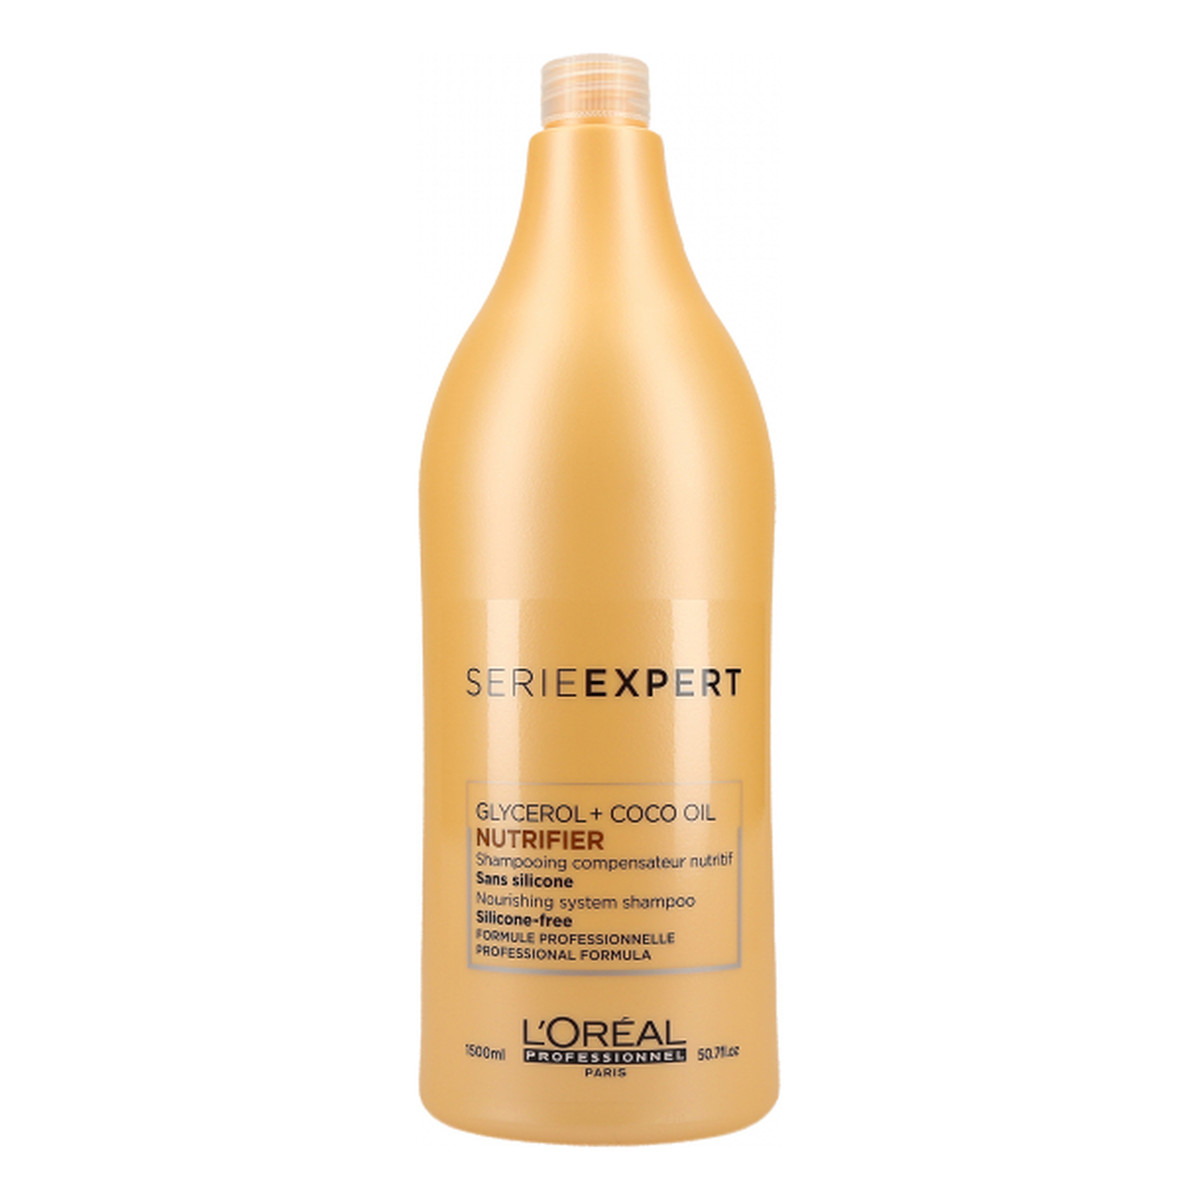 szampon loreal glycerol coco oil